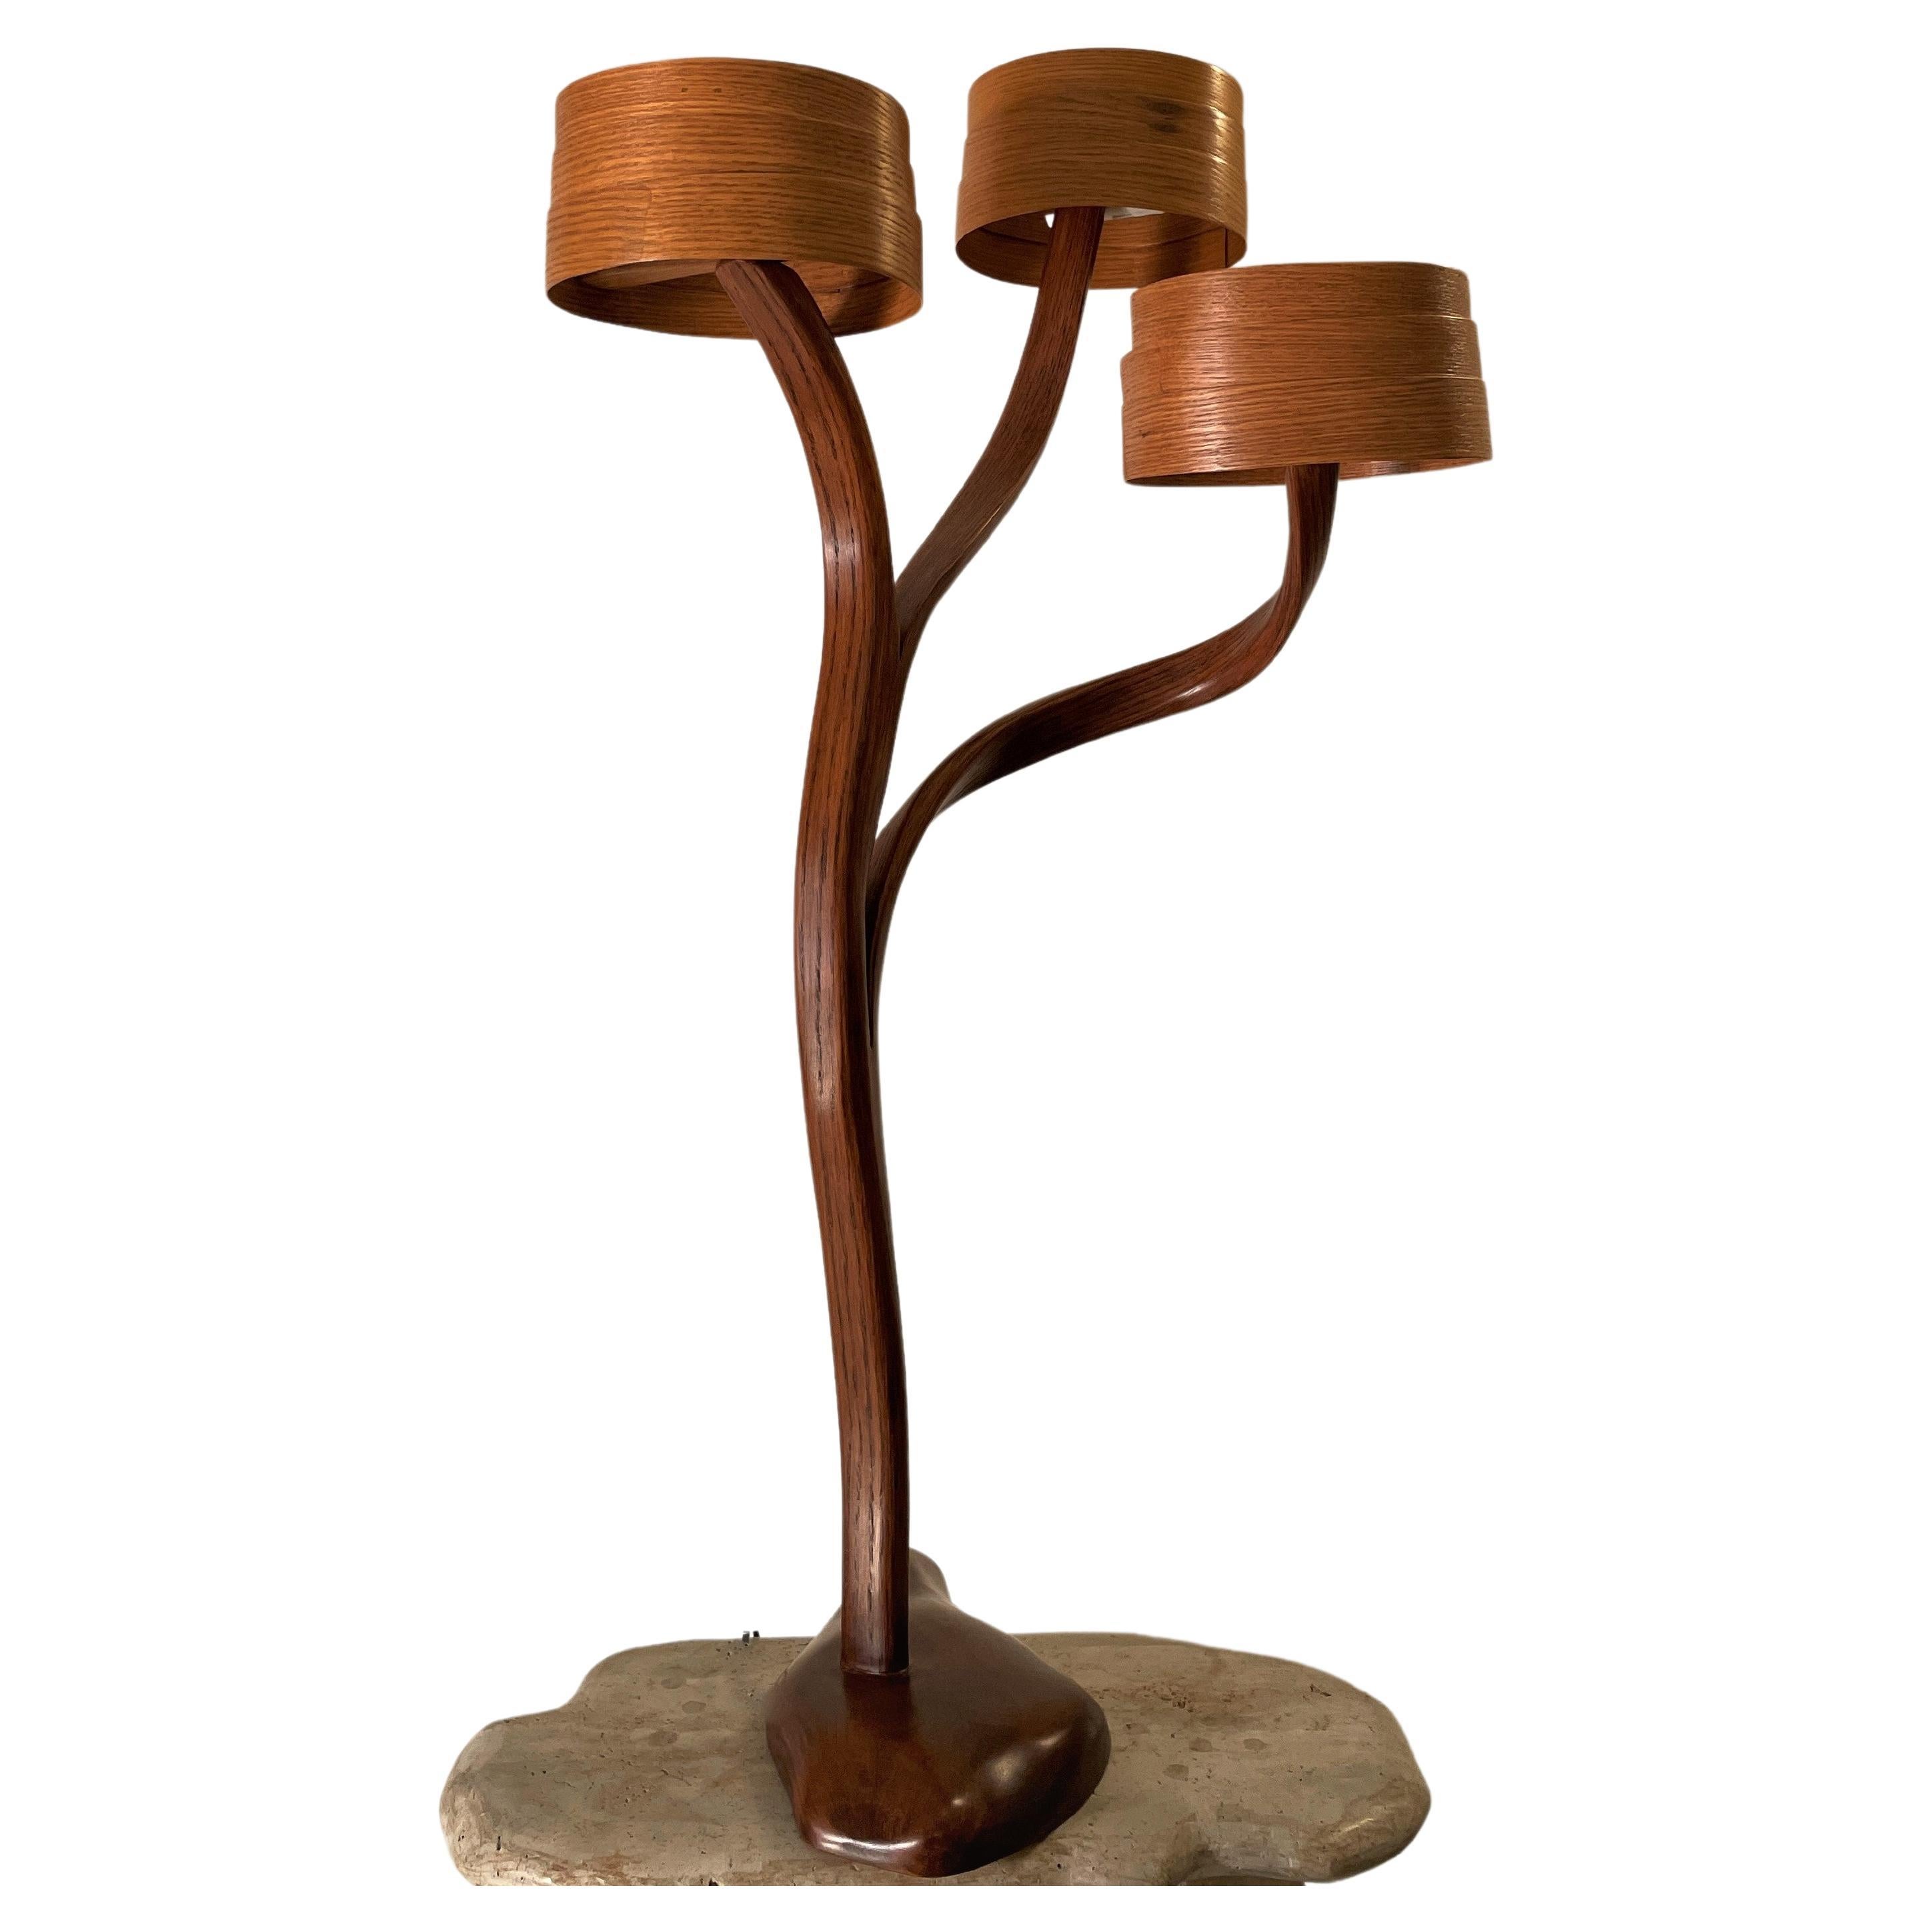 La lampe de table a un design de forme libre ; le bois se plie et se courbe avec de belles coulées pour créer le design. Les détails artisanaux de la pièce, tels que les courbes, les différentes épaisseurs de bois et les torsions, donnent à la pièce